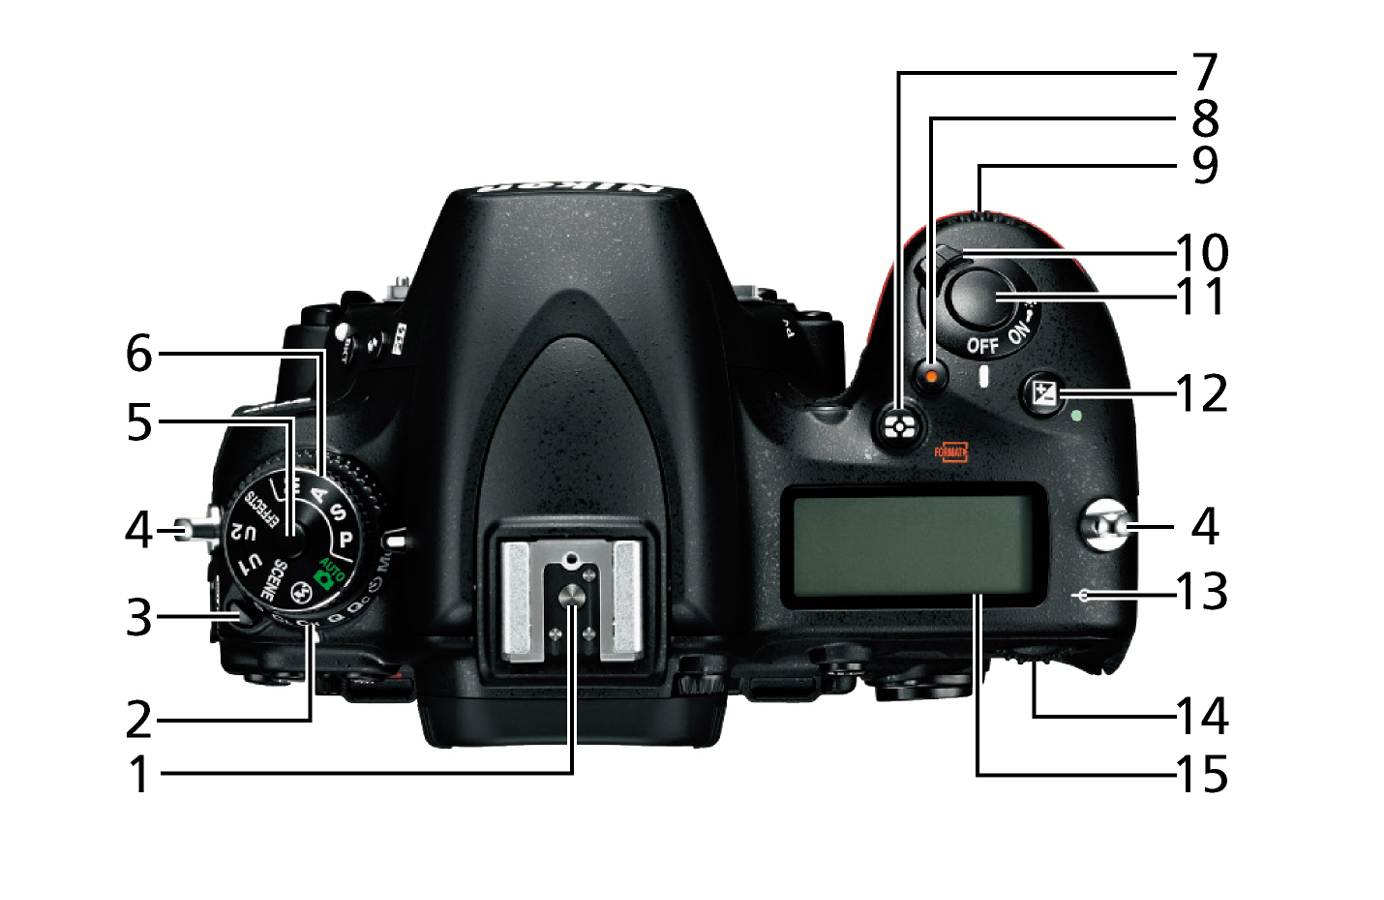 D750 - 各部名称 | 一眼レフカメラ | ニコンイメージング